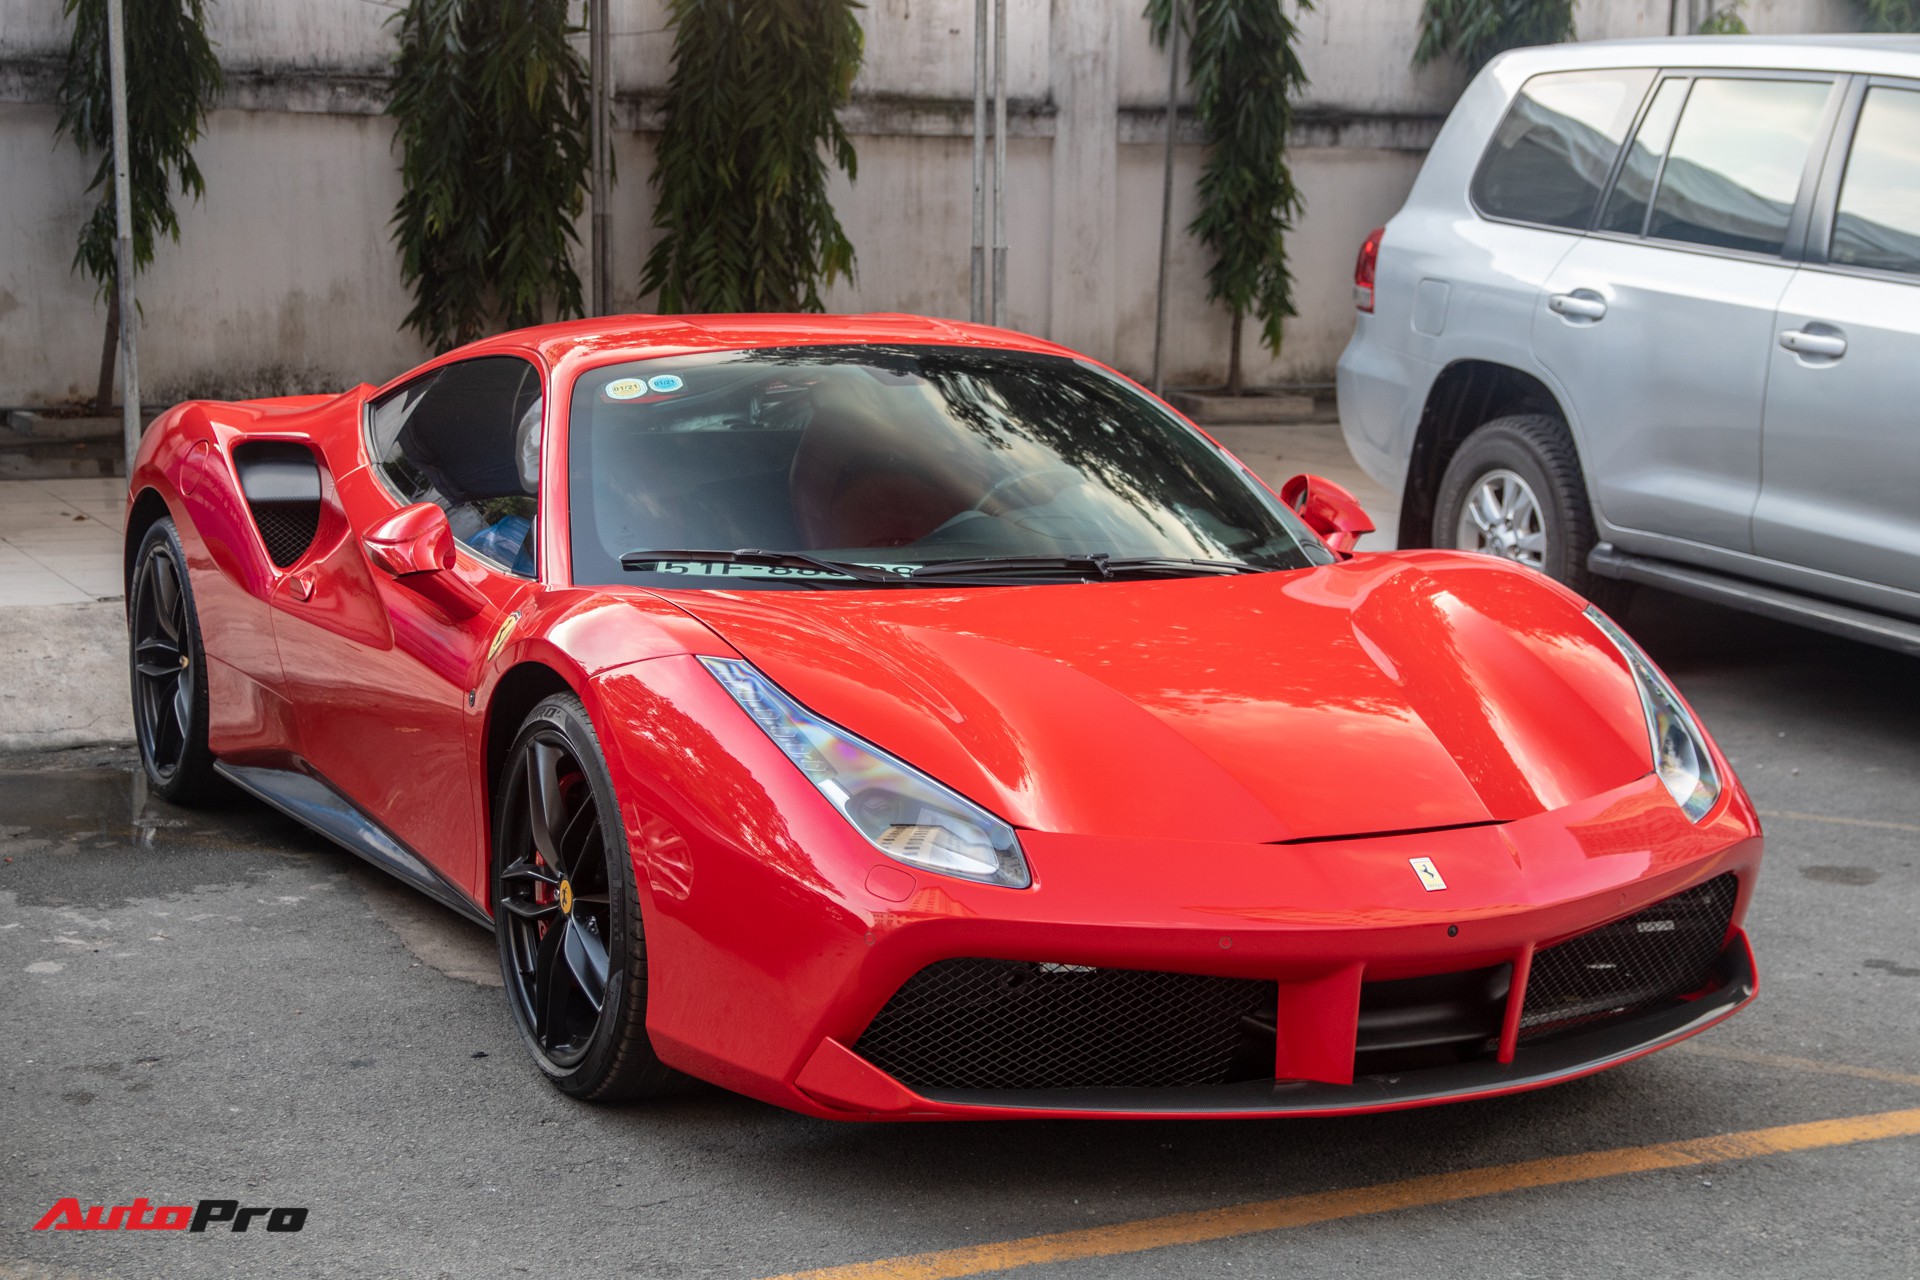 Ca sĩ Tuấn Hưng bán Ferrari 488 GTB, úp mở ‘siêu phẩm’ mới khiến dân tình tò mò - Ảnh 4.